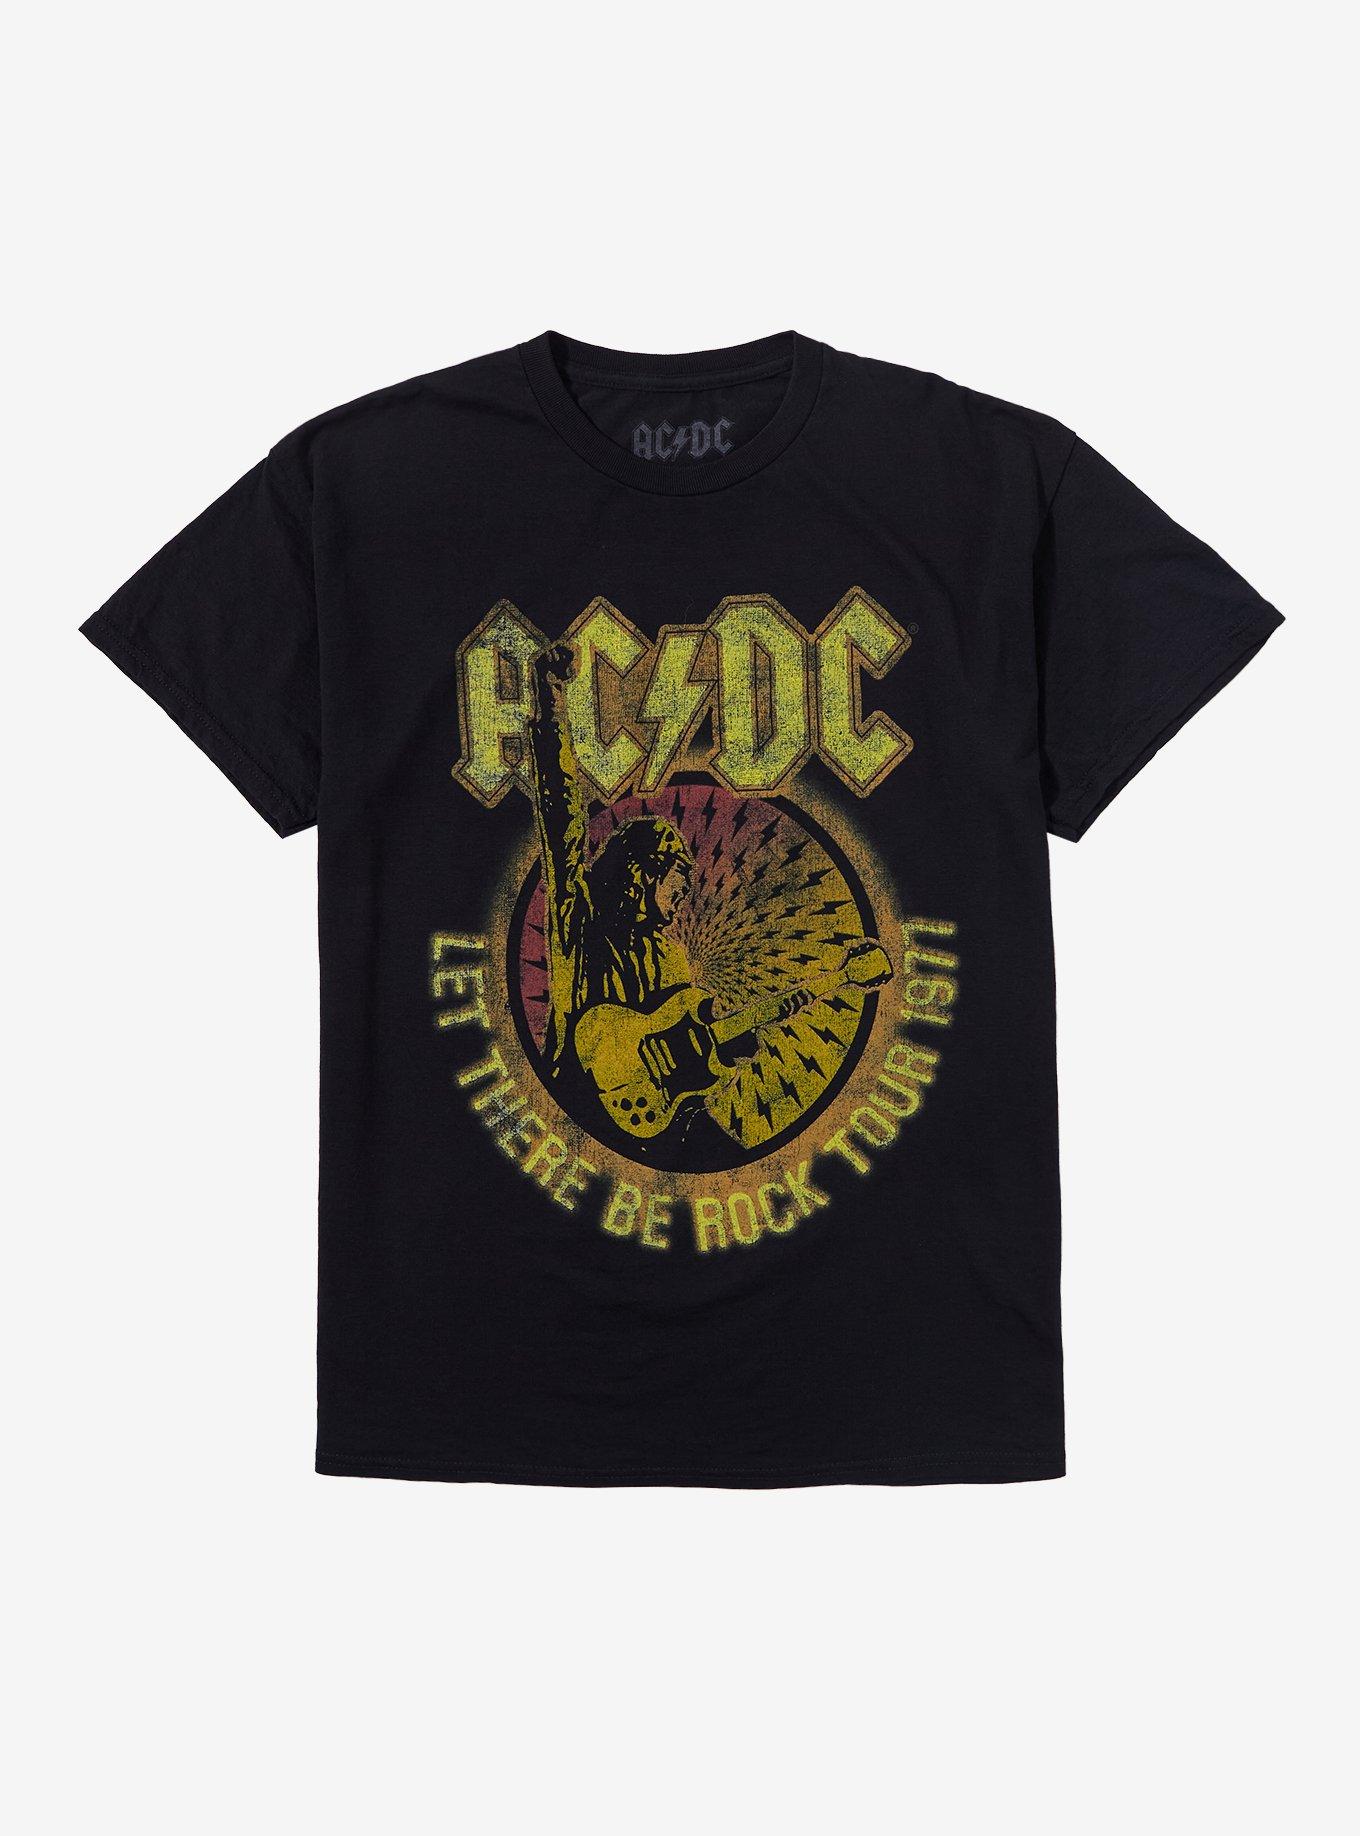 AC/DC Let There Be Rock 1977 Tour Boyfriend Fit Girls T-Shirt, BLACK, hi-res